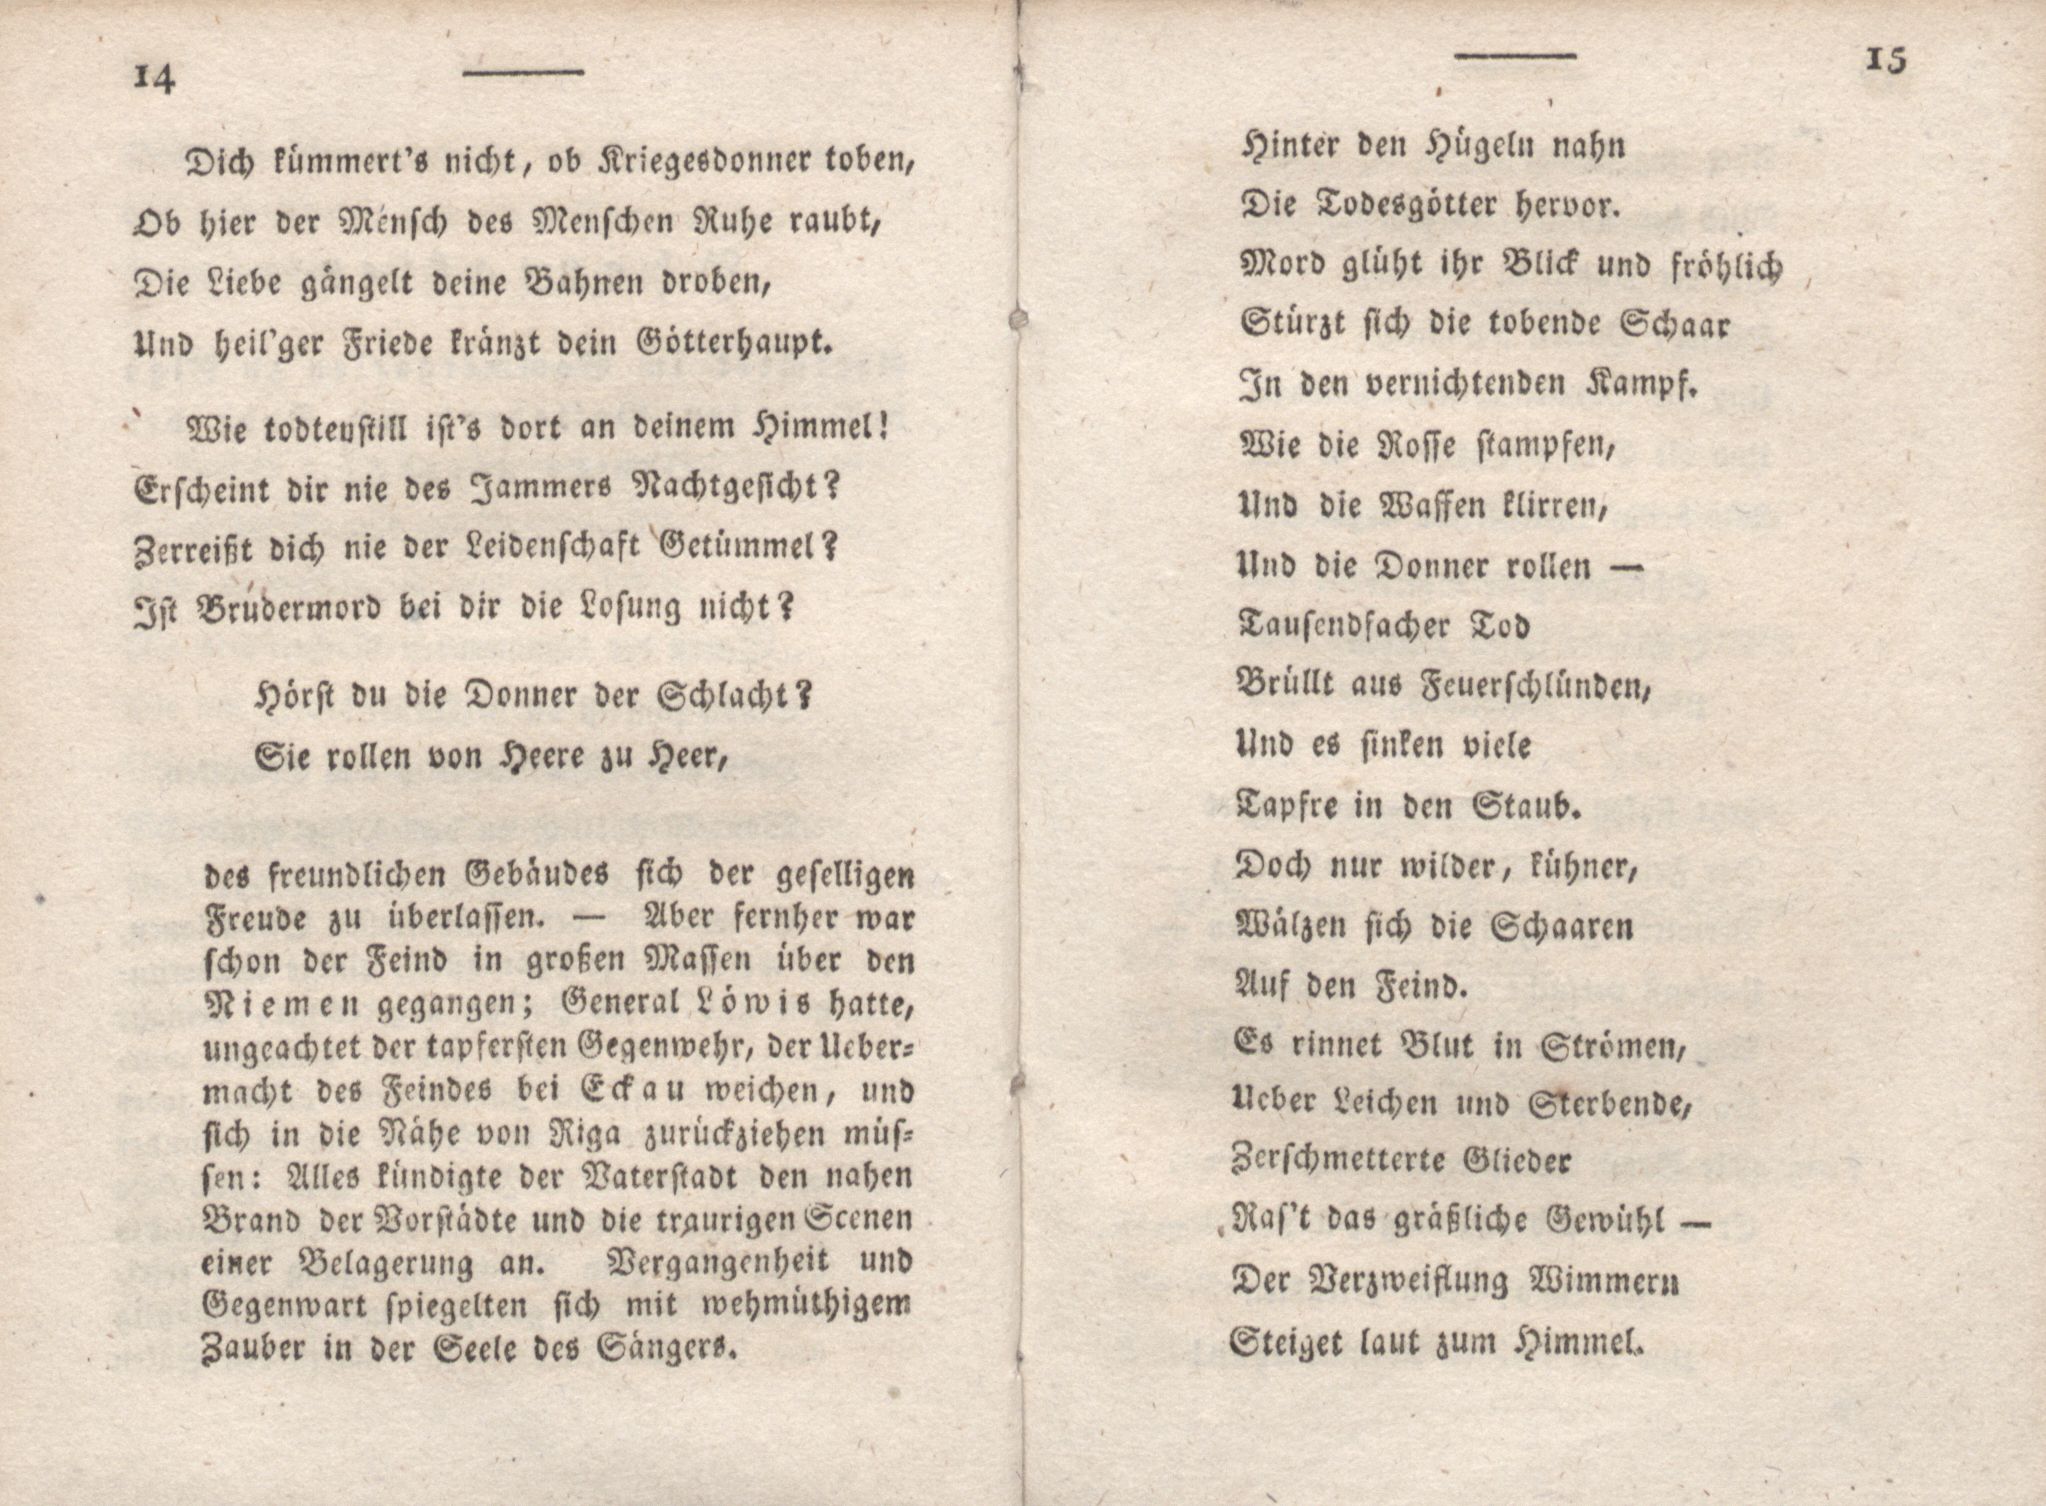 Livona [2] (1815) | 17. (14-15) Main body of text